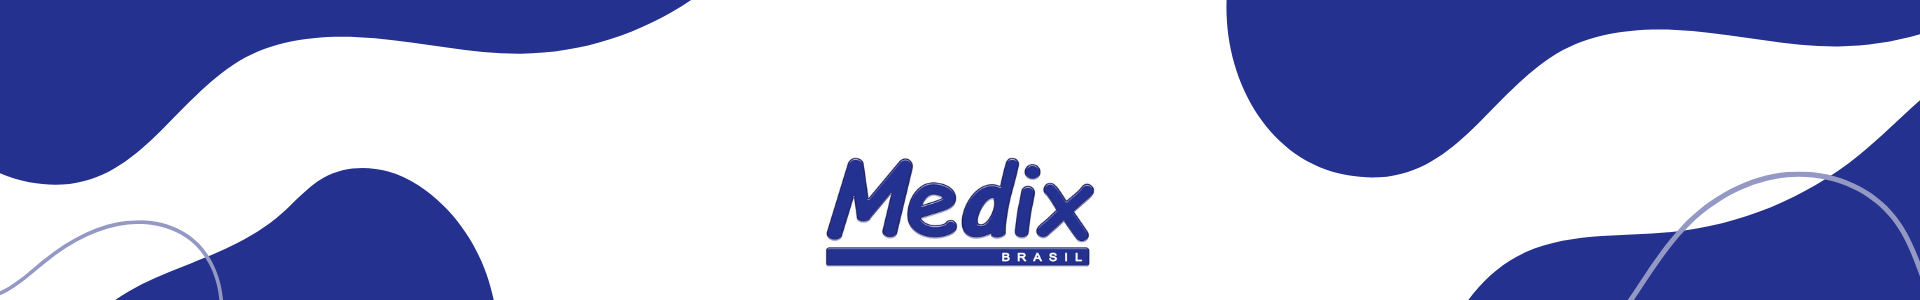 Marca Medix